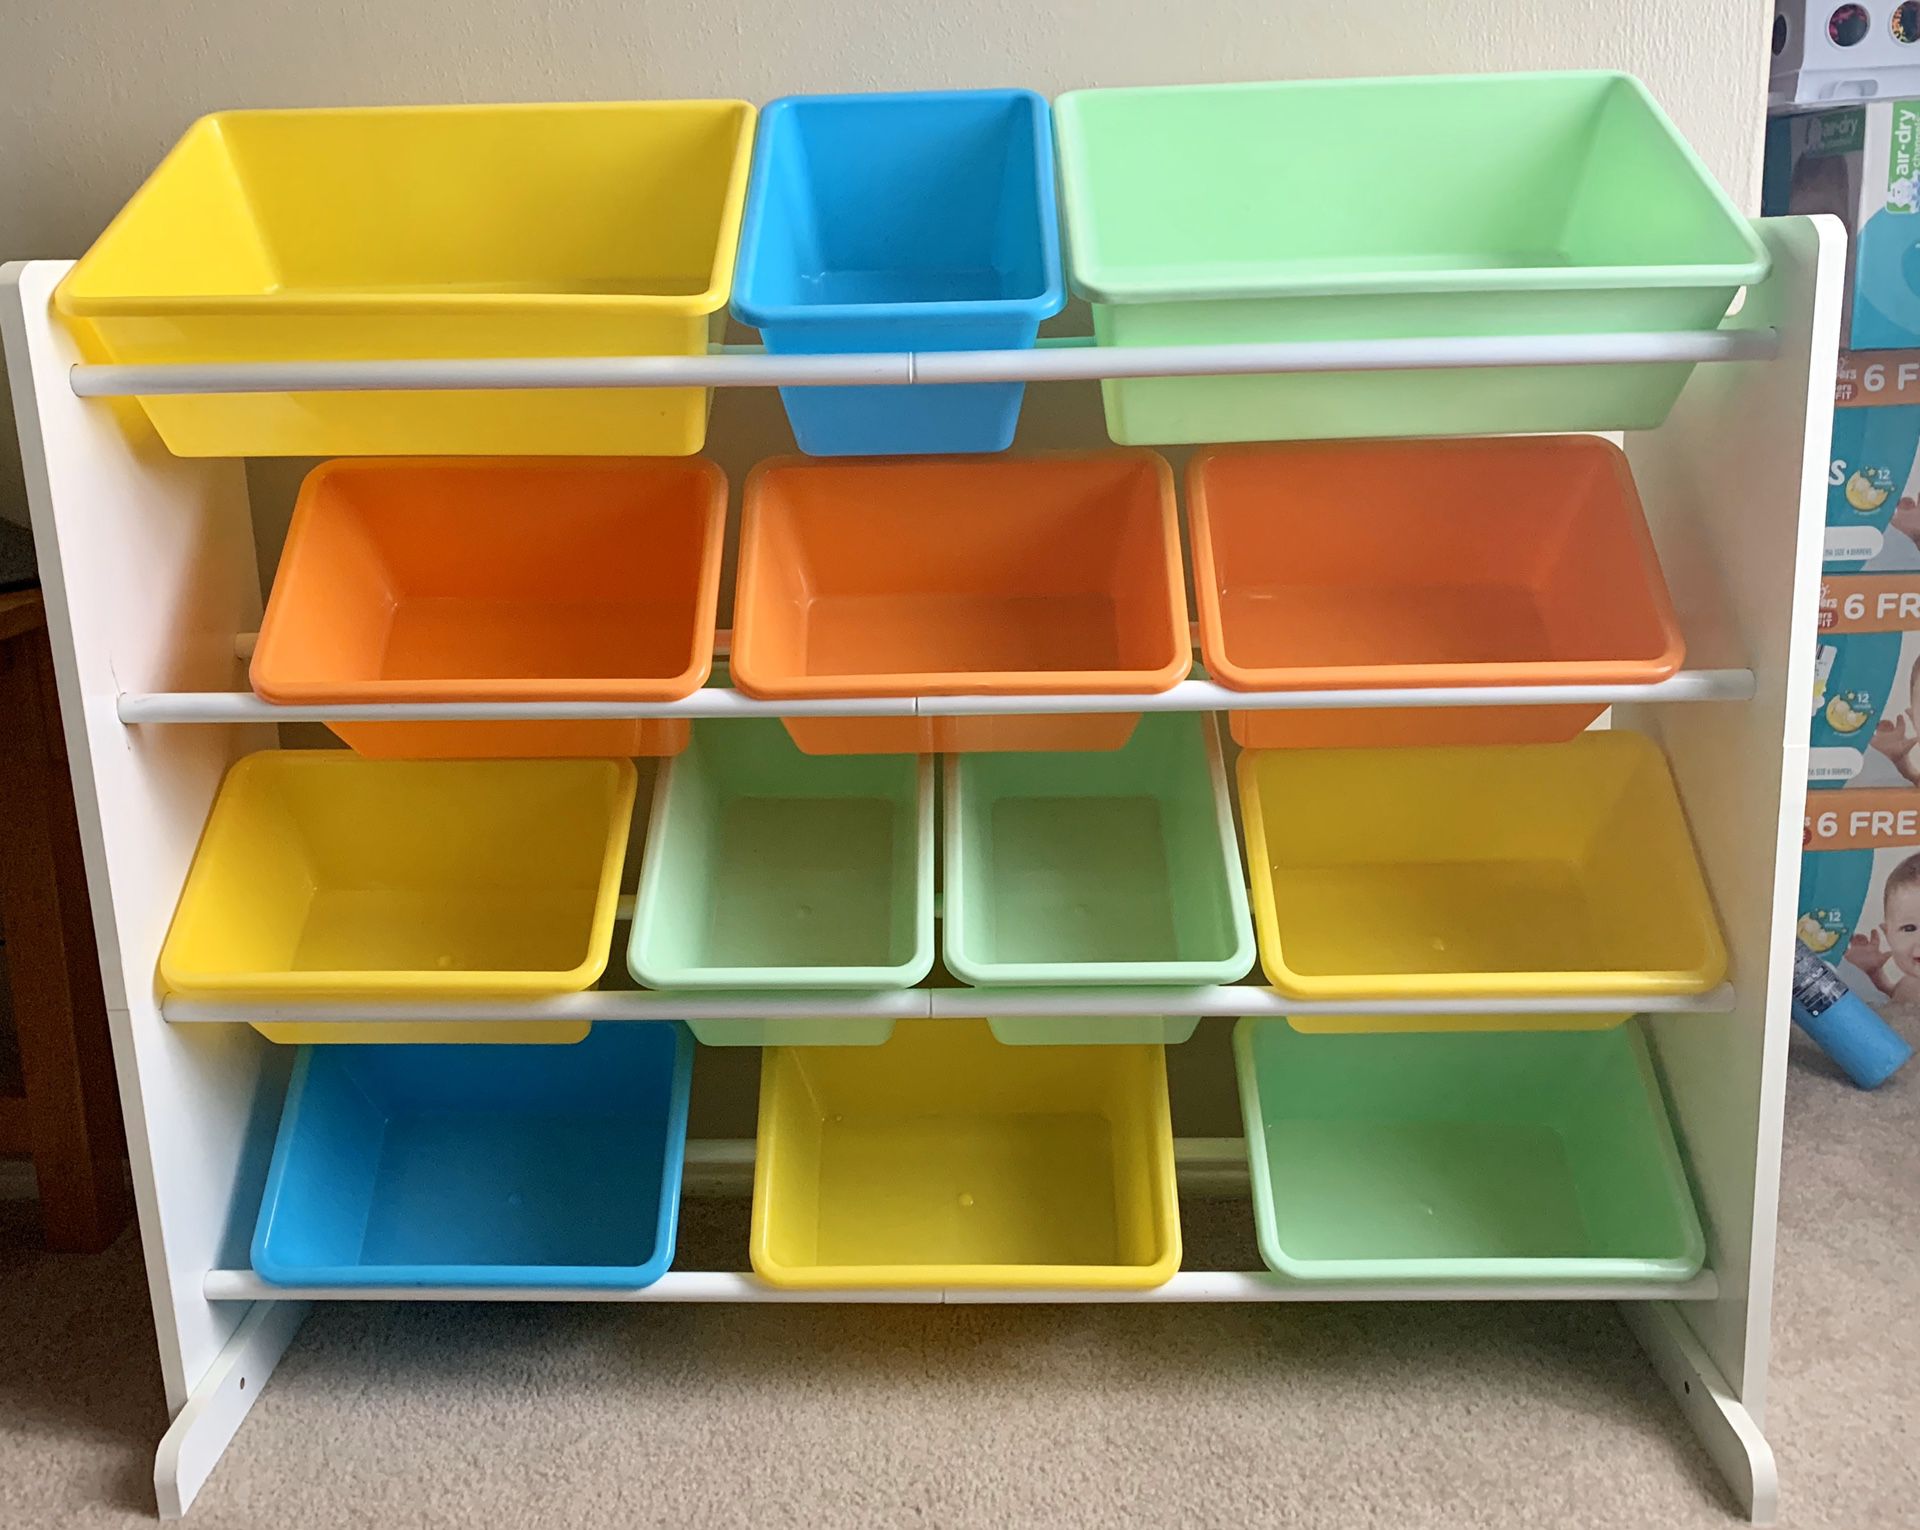 Kids Toy Storage Organizer With Plastic Bins, Storage Box Shelf Drawer